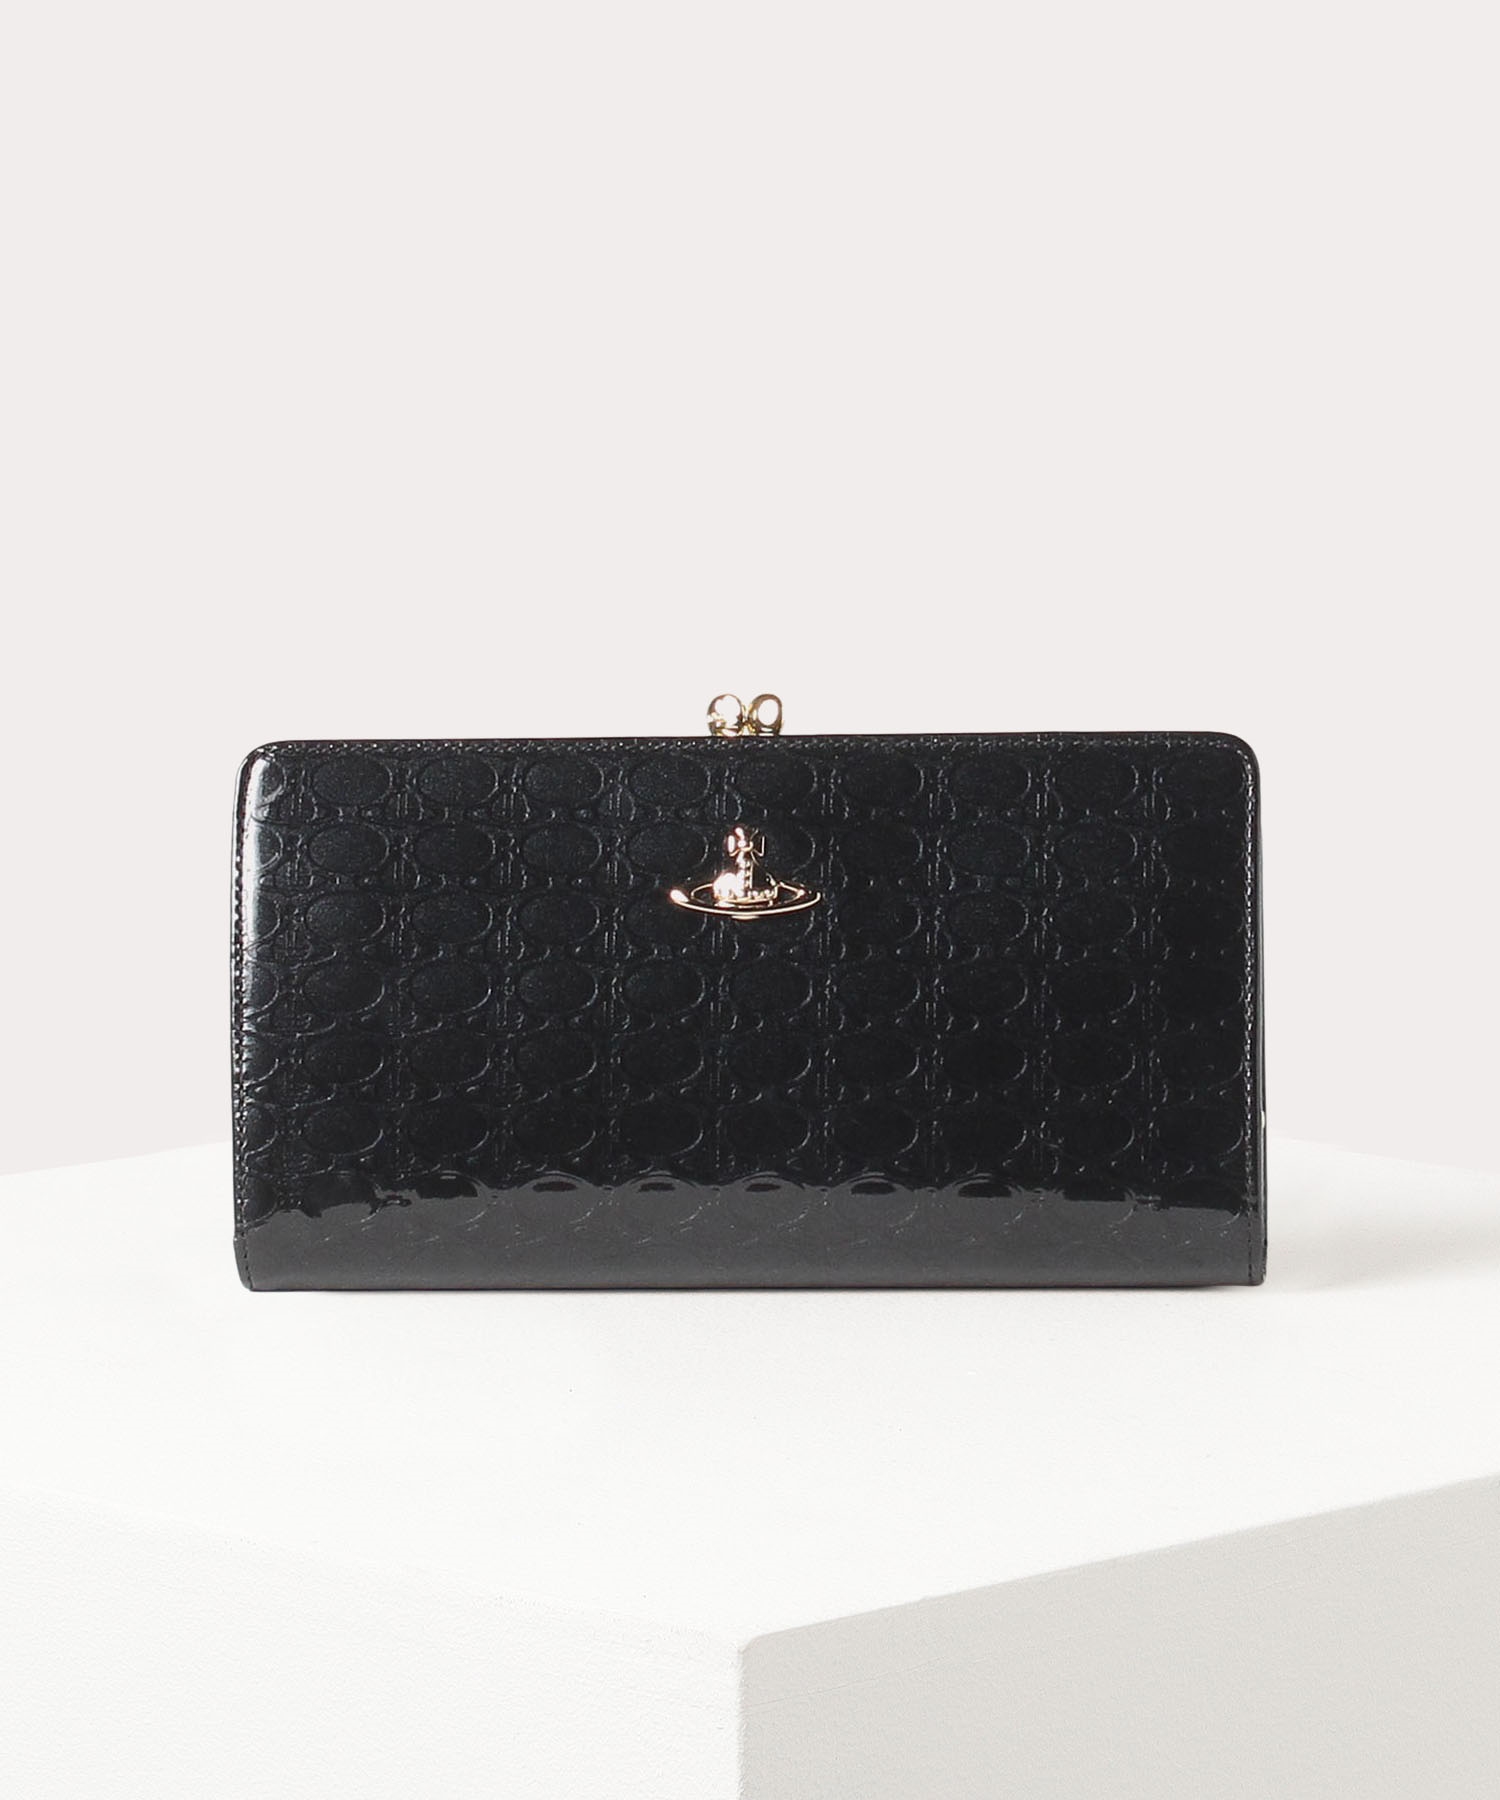 40代女性に人気の財布はVivienne WestwoodのOVAL ORBです